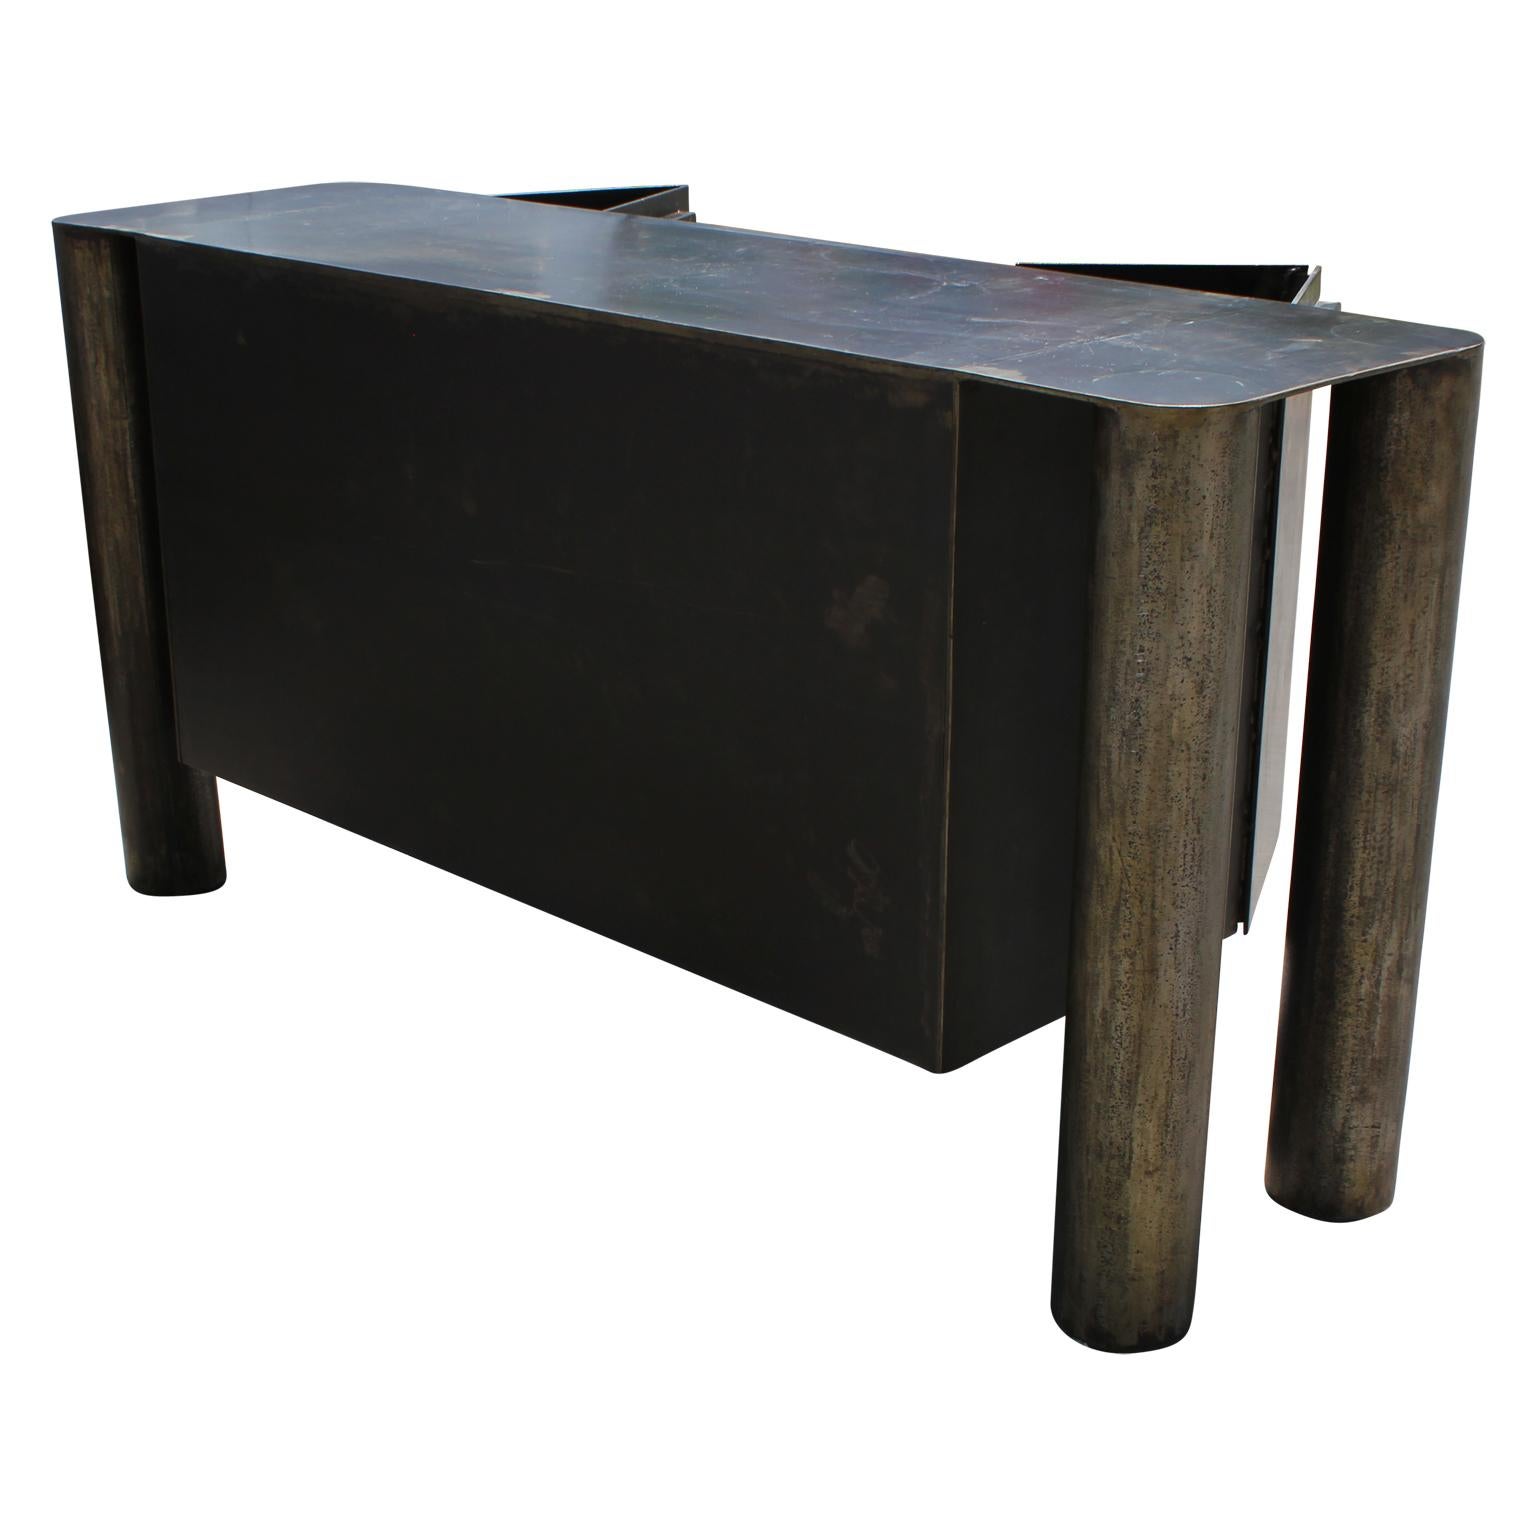 North American Sculptural Postmodern / Industrial Custom Made Steel Sideboard / Cabinet